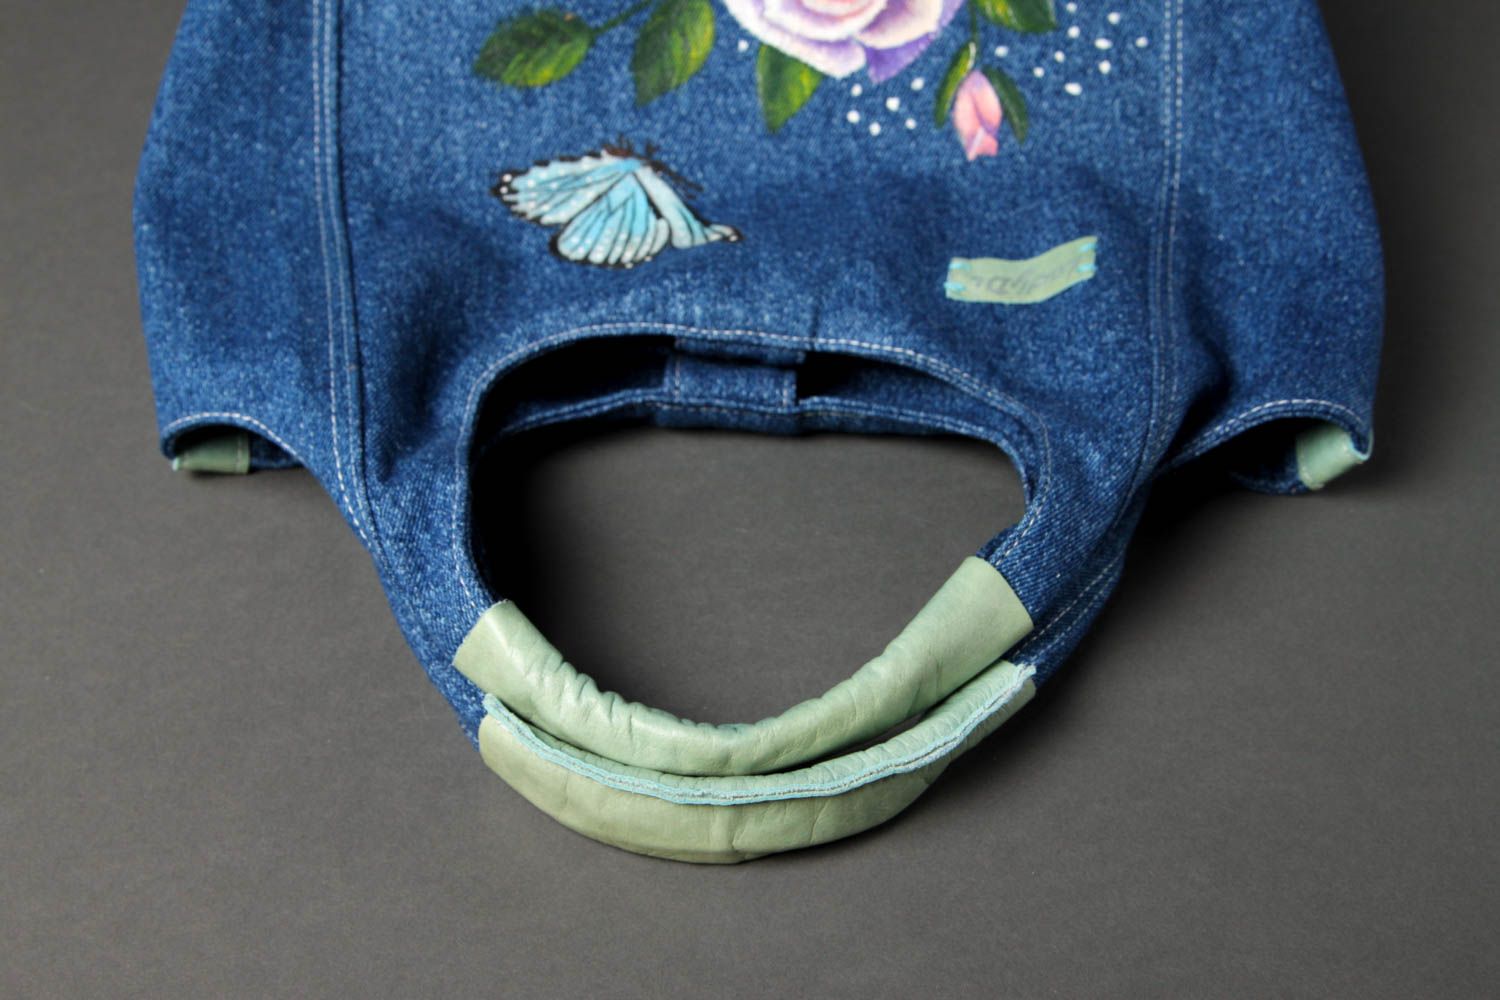 Сумка ручной работы женская сумка авторская тканевая сумка из джинсовой ткани фото 4